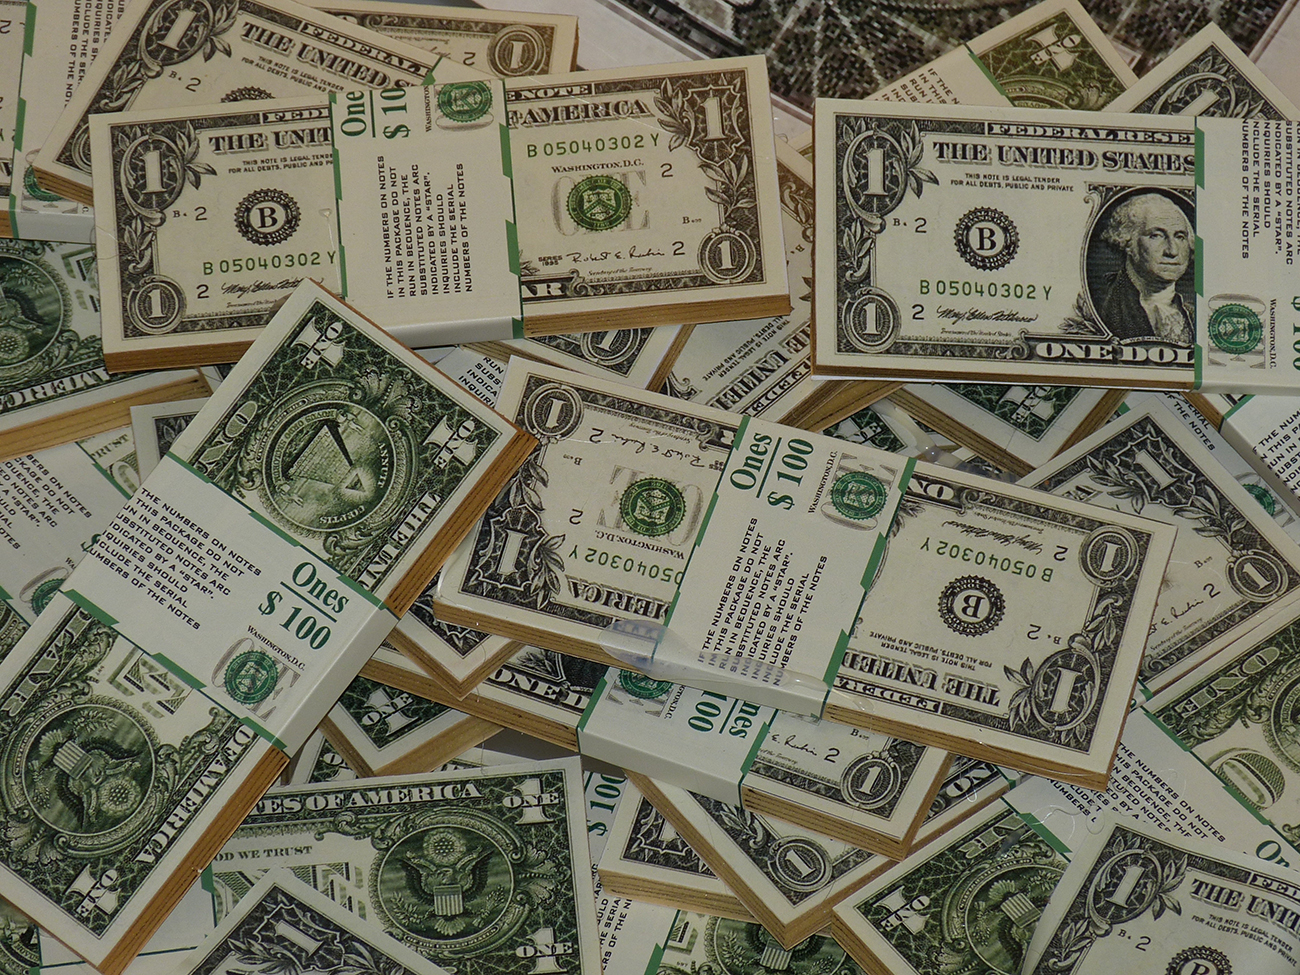 一张照片显示美元钞票捆绑并包装成100美元的金额。